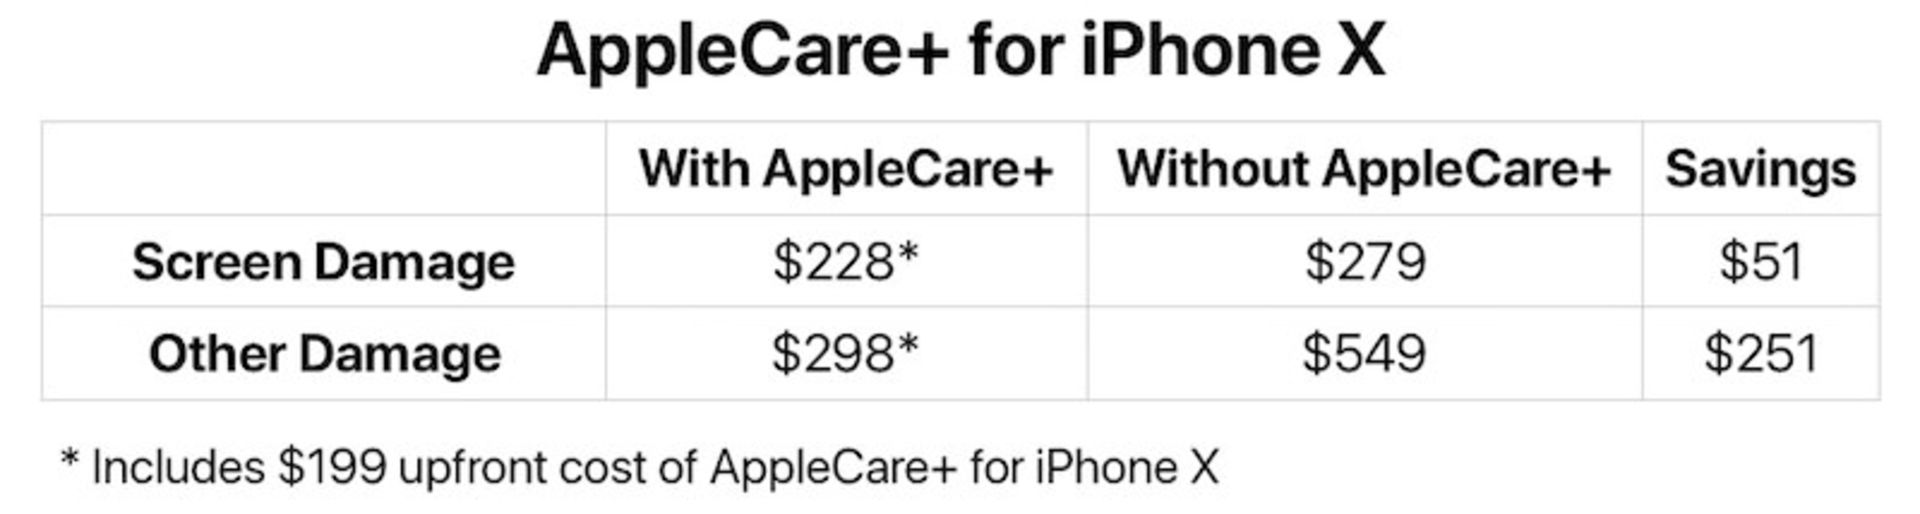 Apple Care